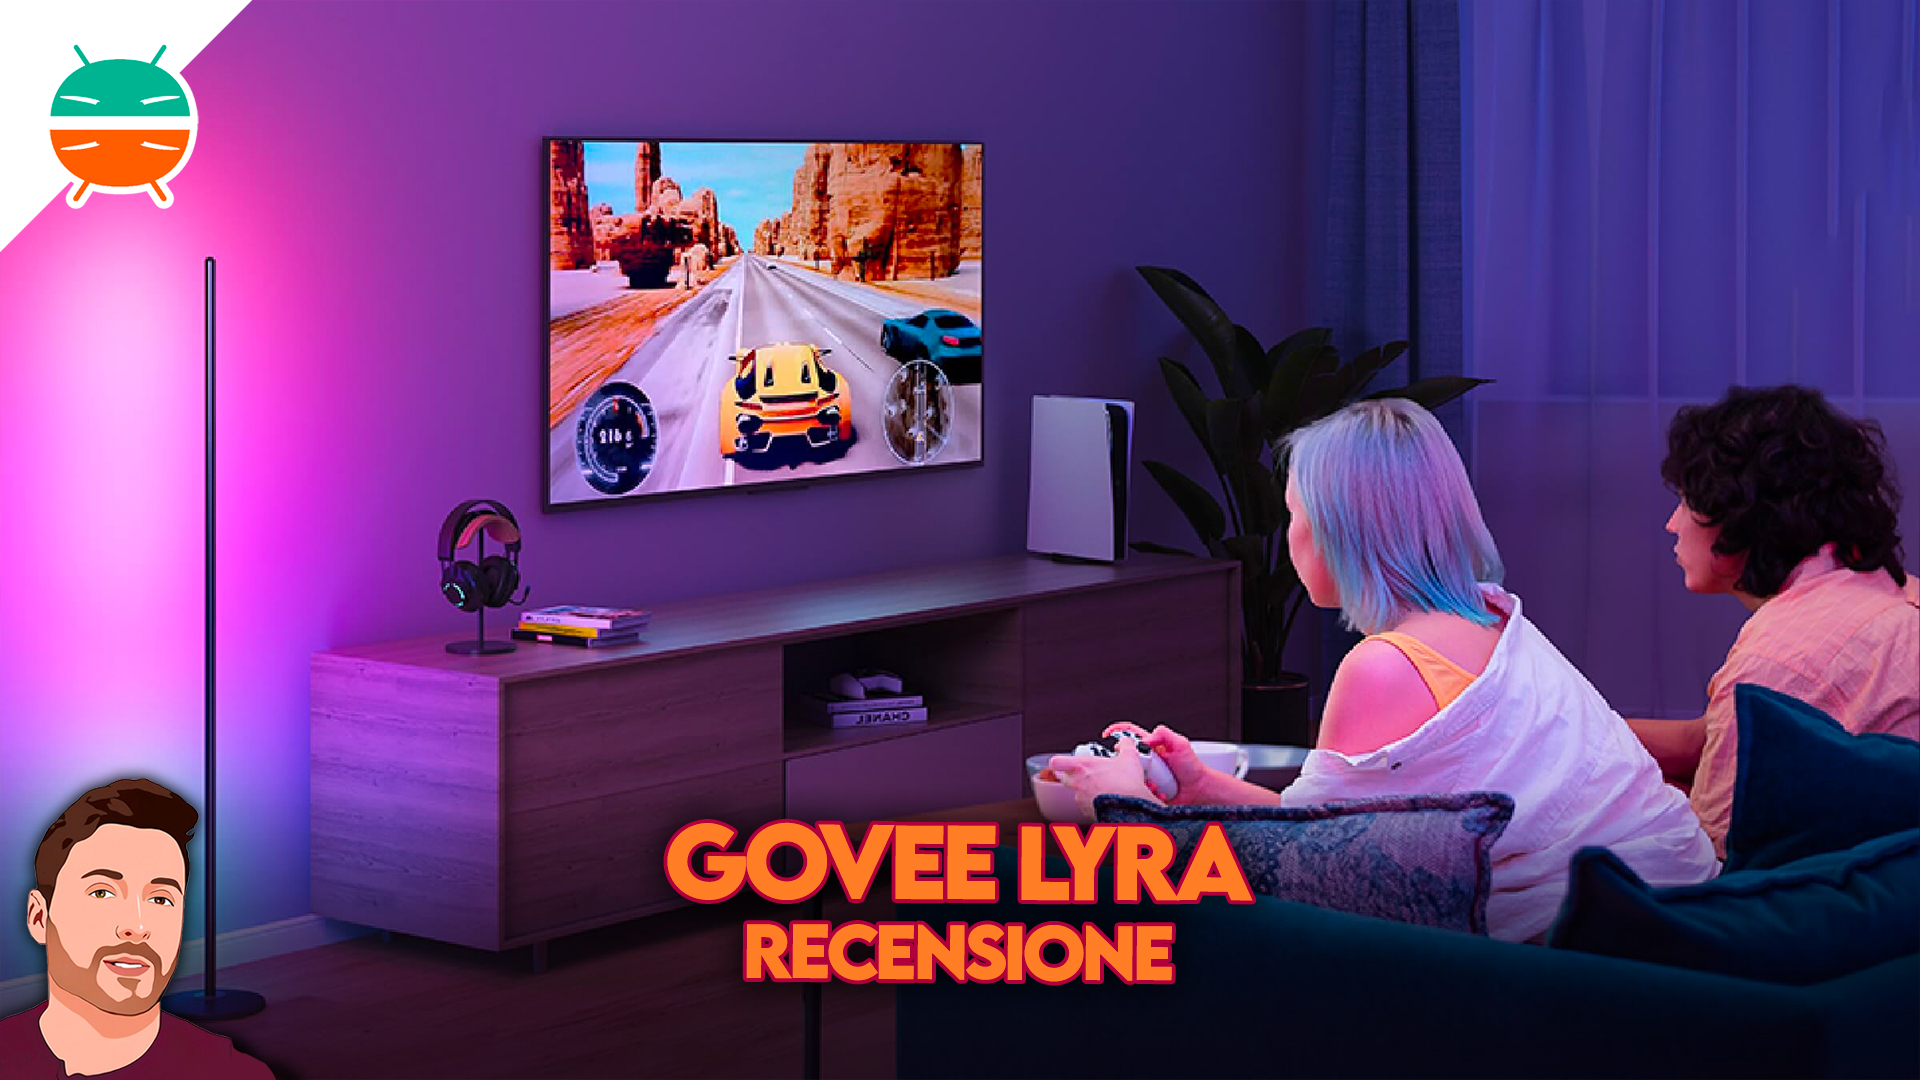 Govee Lyra Basic recension: denna smarta golvlampa gör alla andra tråkiga ...